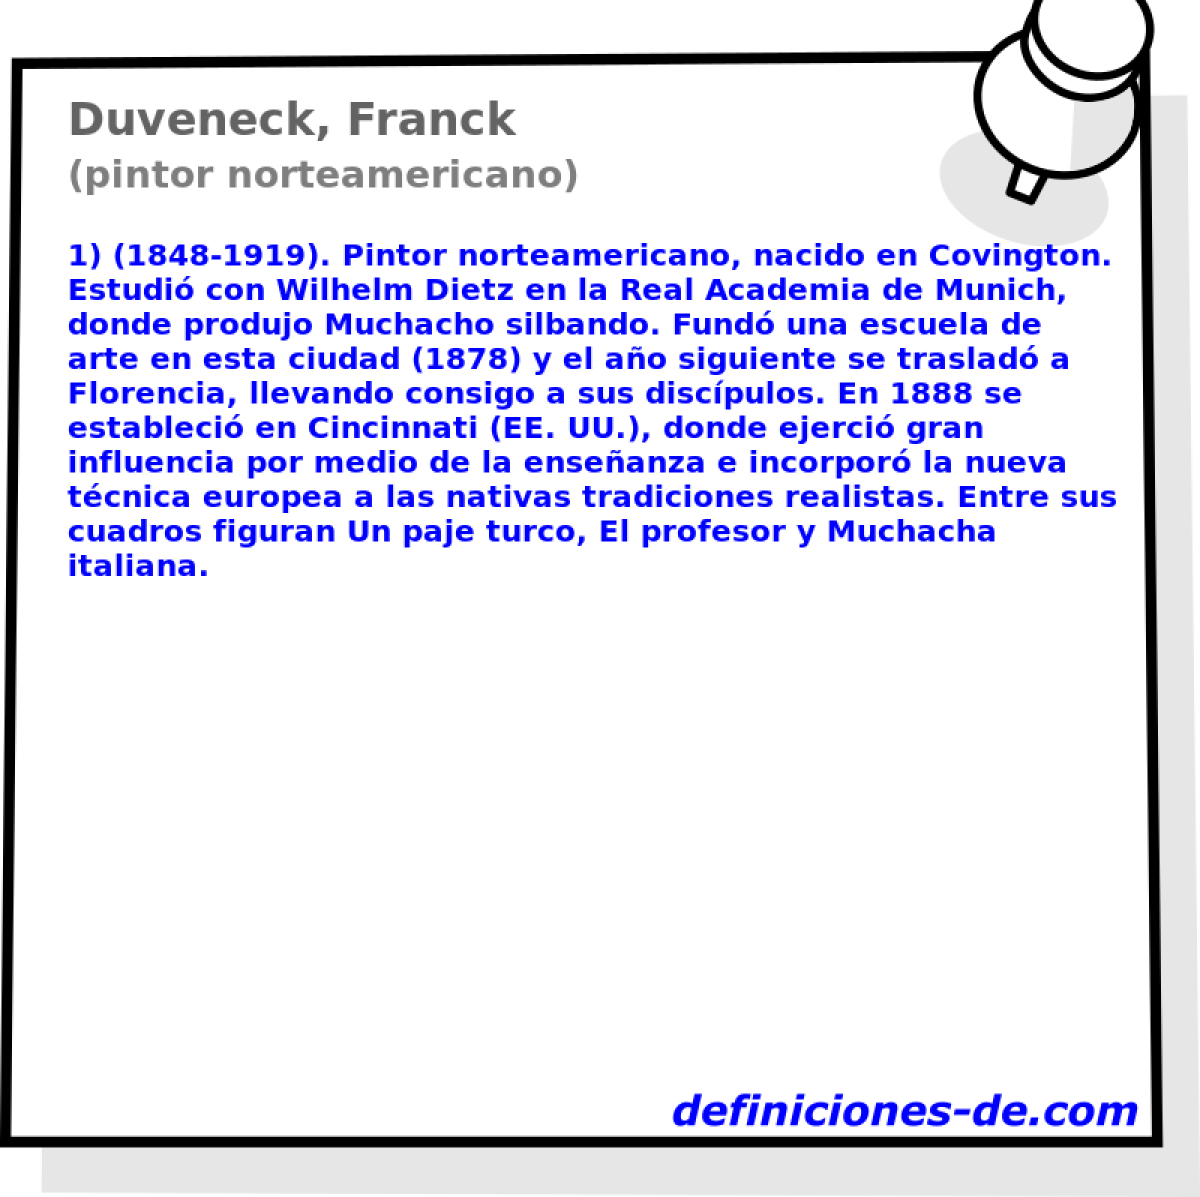 Duveneck, Franck (pintor norteamericano)